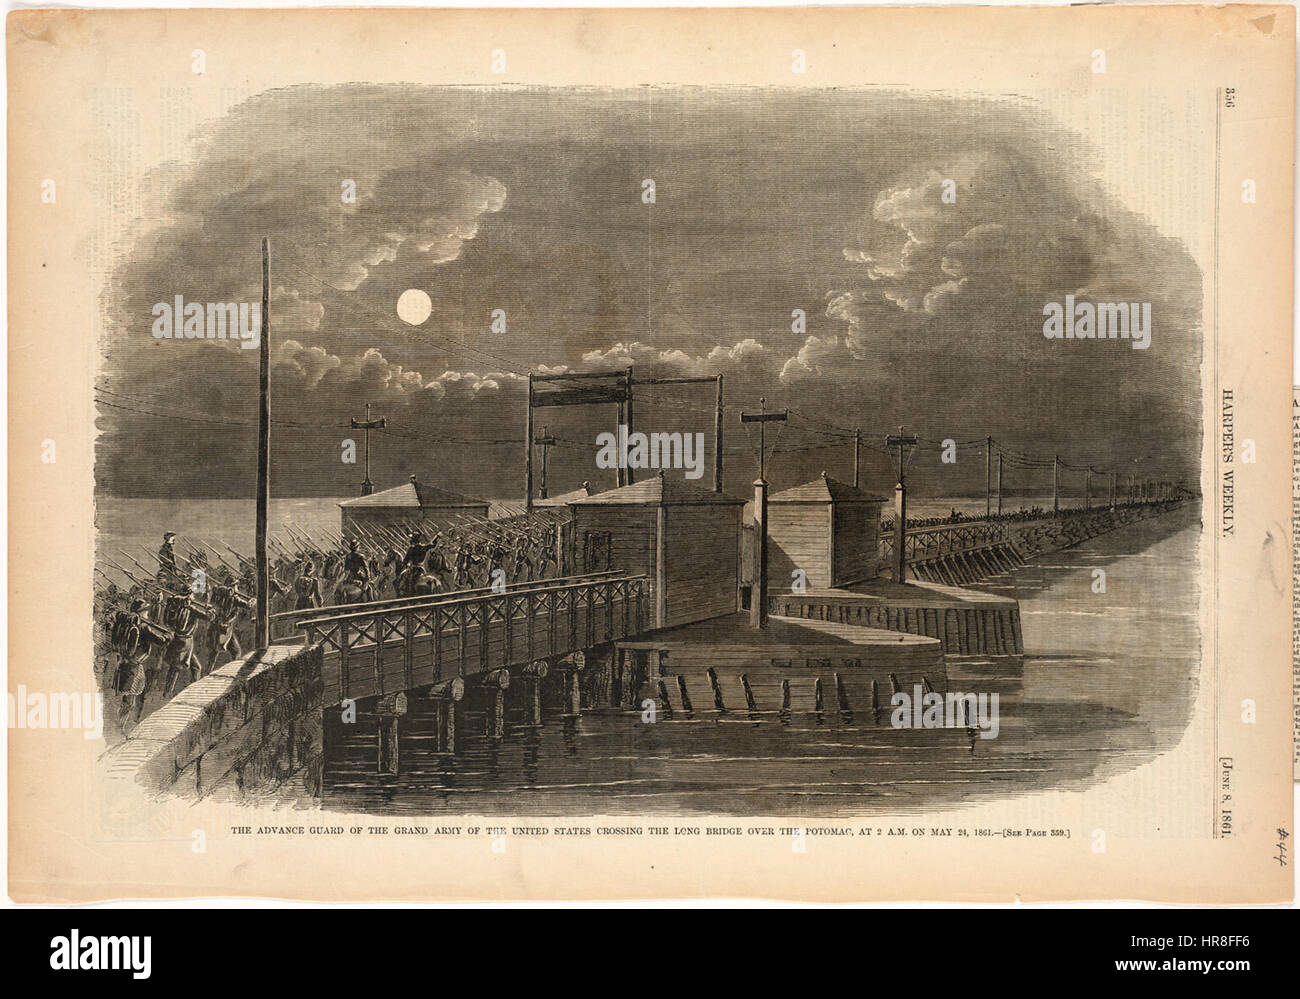 Die Vorhut der großen Armee der Vereinigten Staaten über die lange Brücke über den Potomac bei 02:00 am 24. Mai 1861 (Boston Public Library) Stockfoto